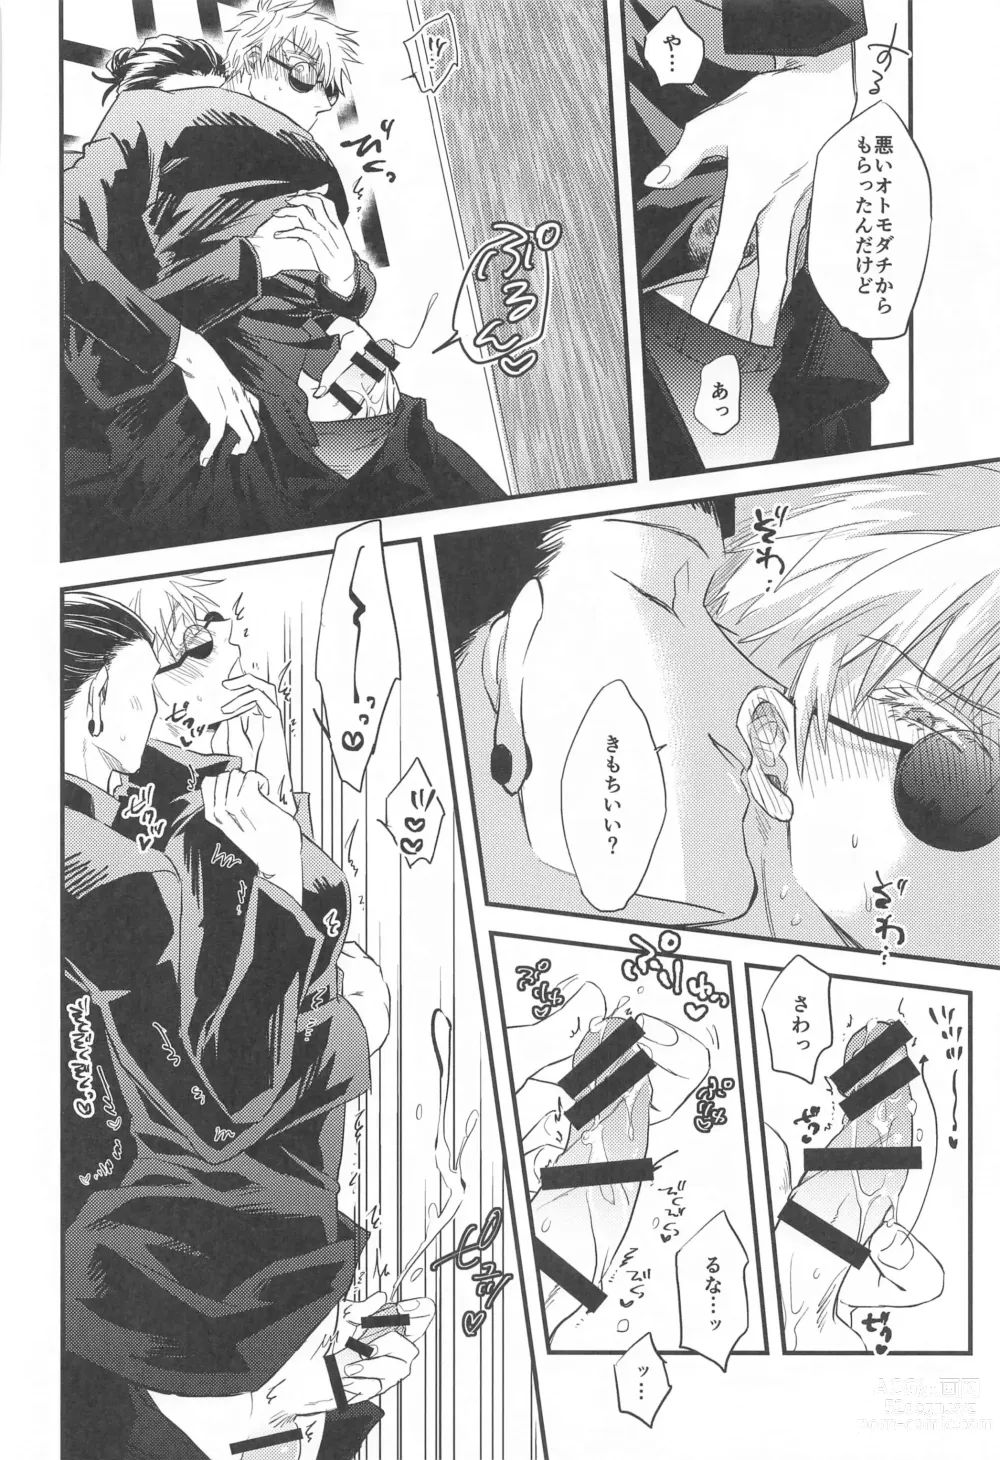 Page 11 of doujinshi Saikyou  x Kimeseku  x Sokuochi 2-koma